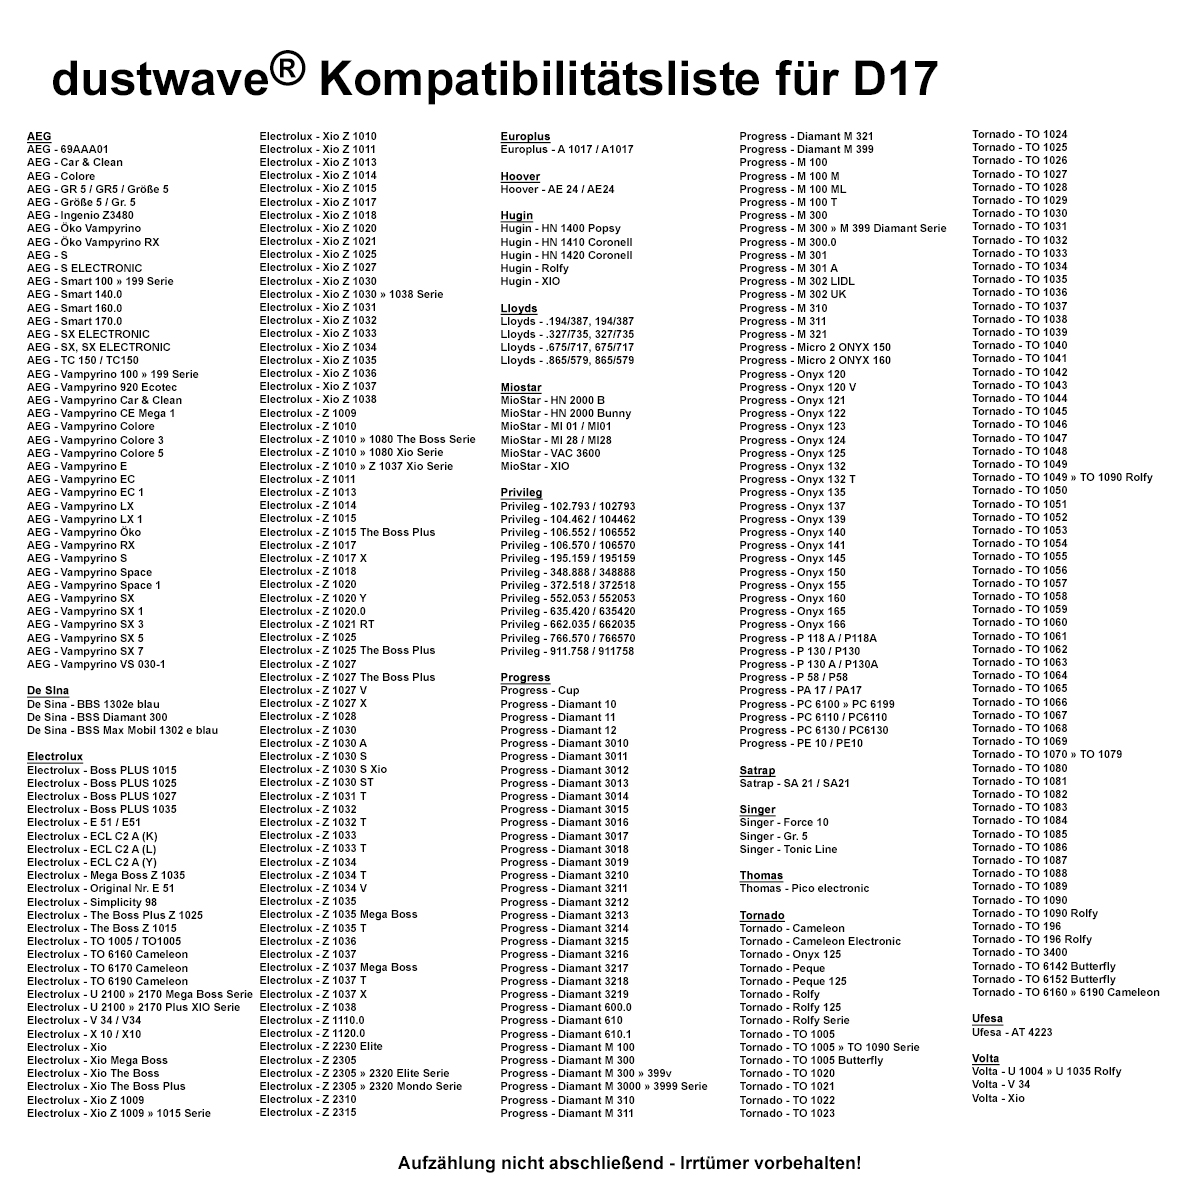 Dustwave® 10 Staubsaugerbeutel für AEG Vampyrino 150.0 - hocheffizient mit Hygieneverschluss - Made in Germany